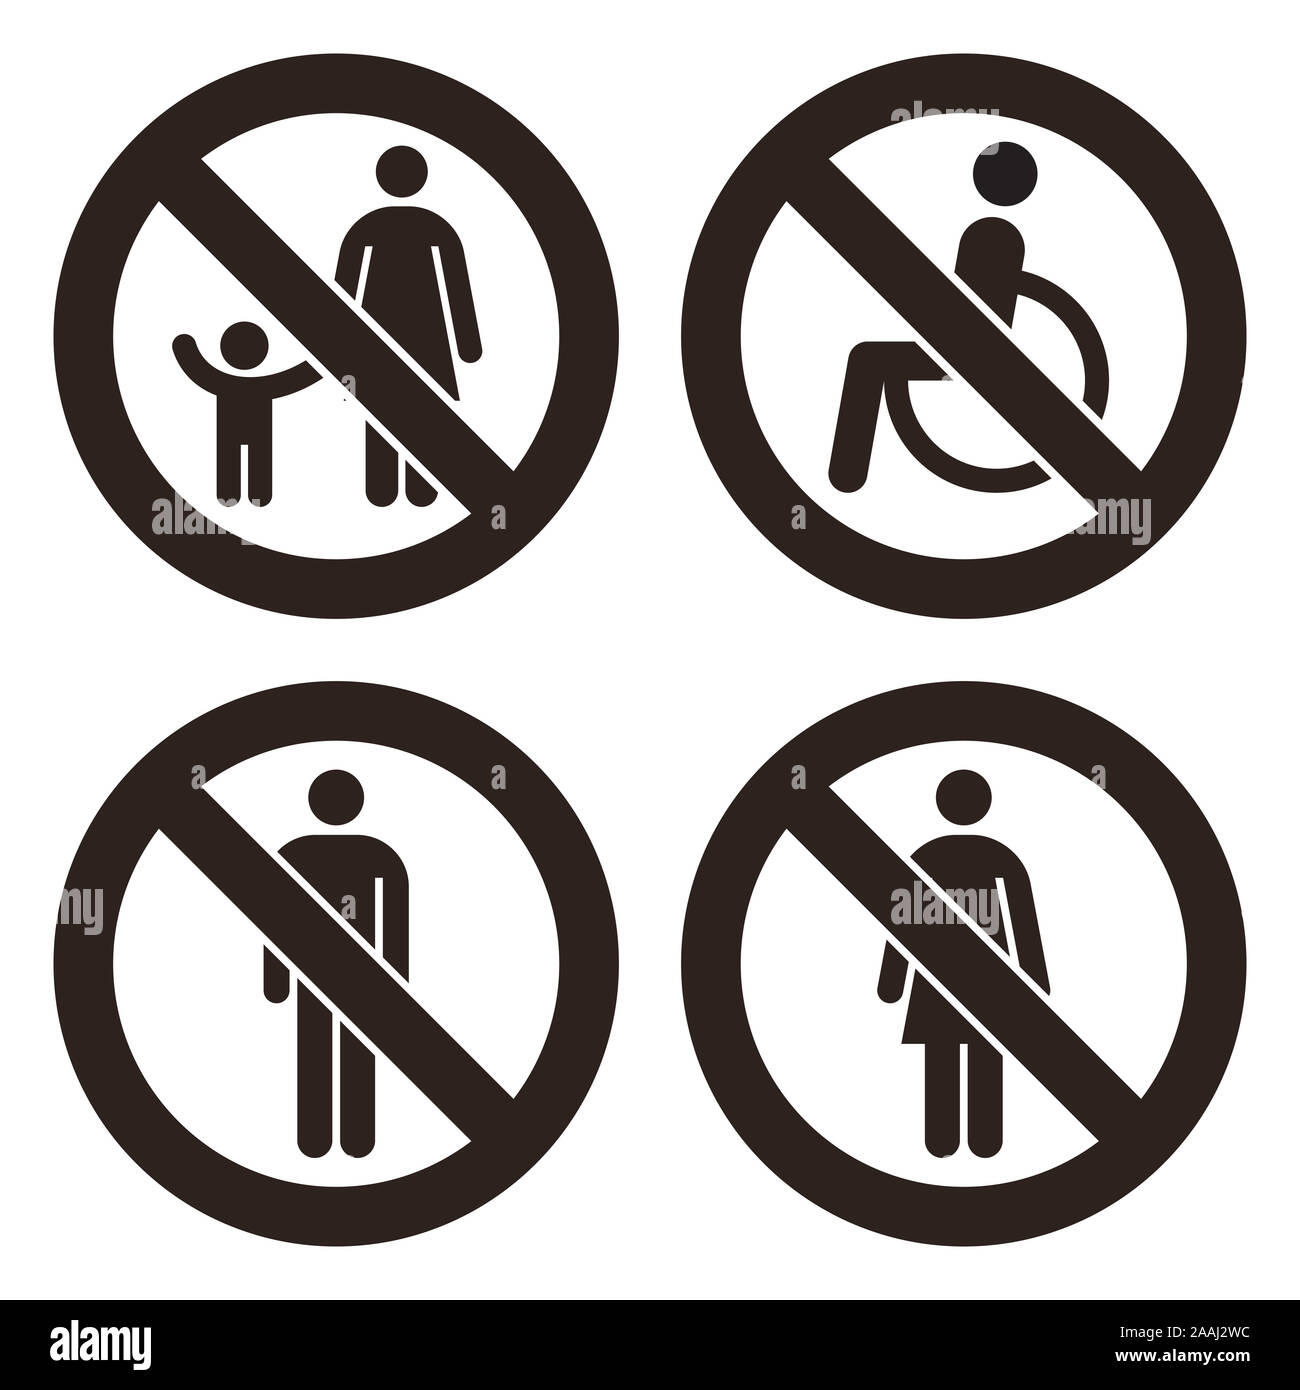 Le parent et l'enfant signe, pas d'handicapés admis signe, aucun homme, aucune femme signe signe. Enseignes interdites isolé sur fond blanc Banque D'Images